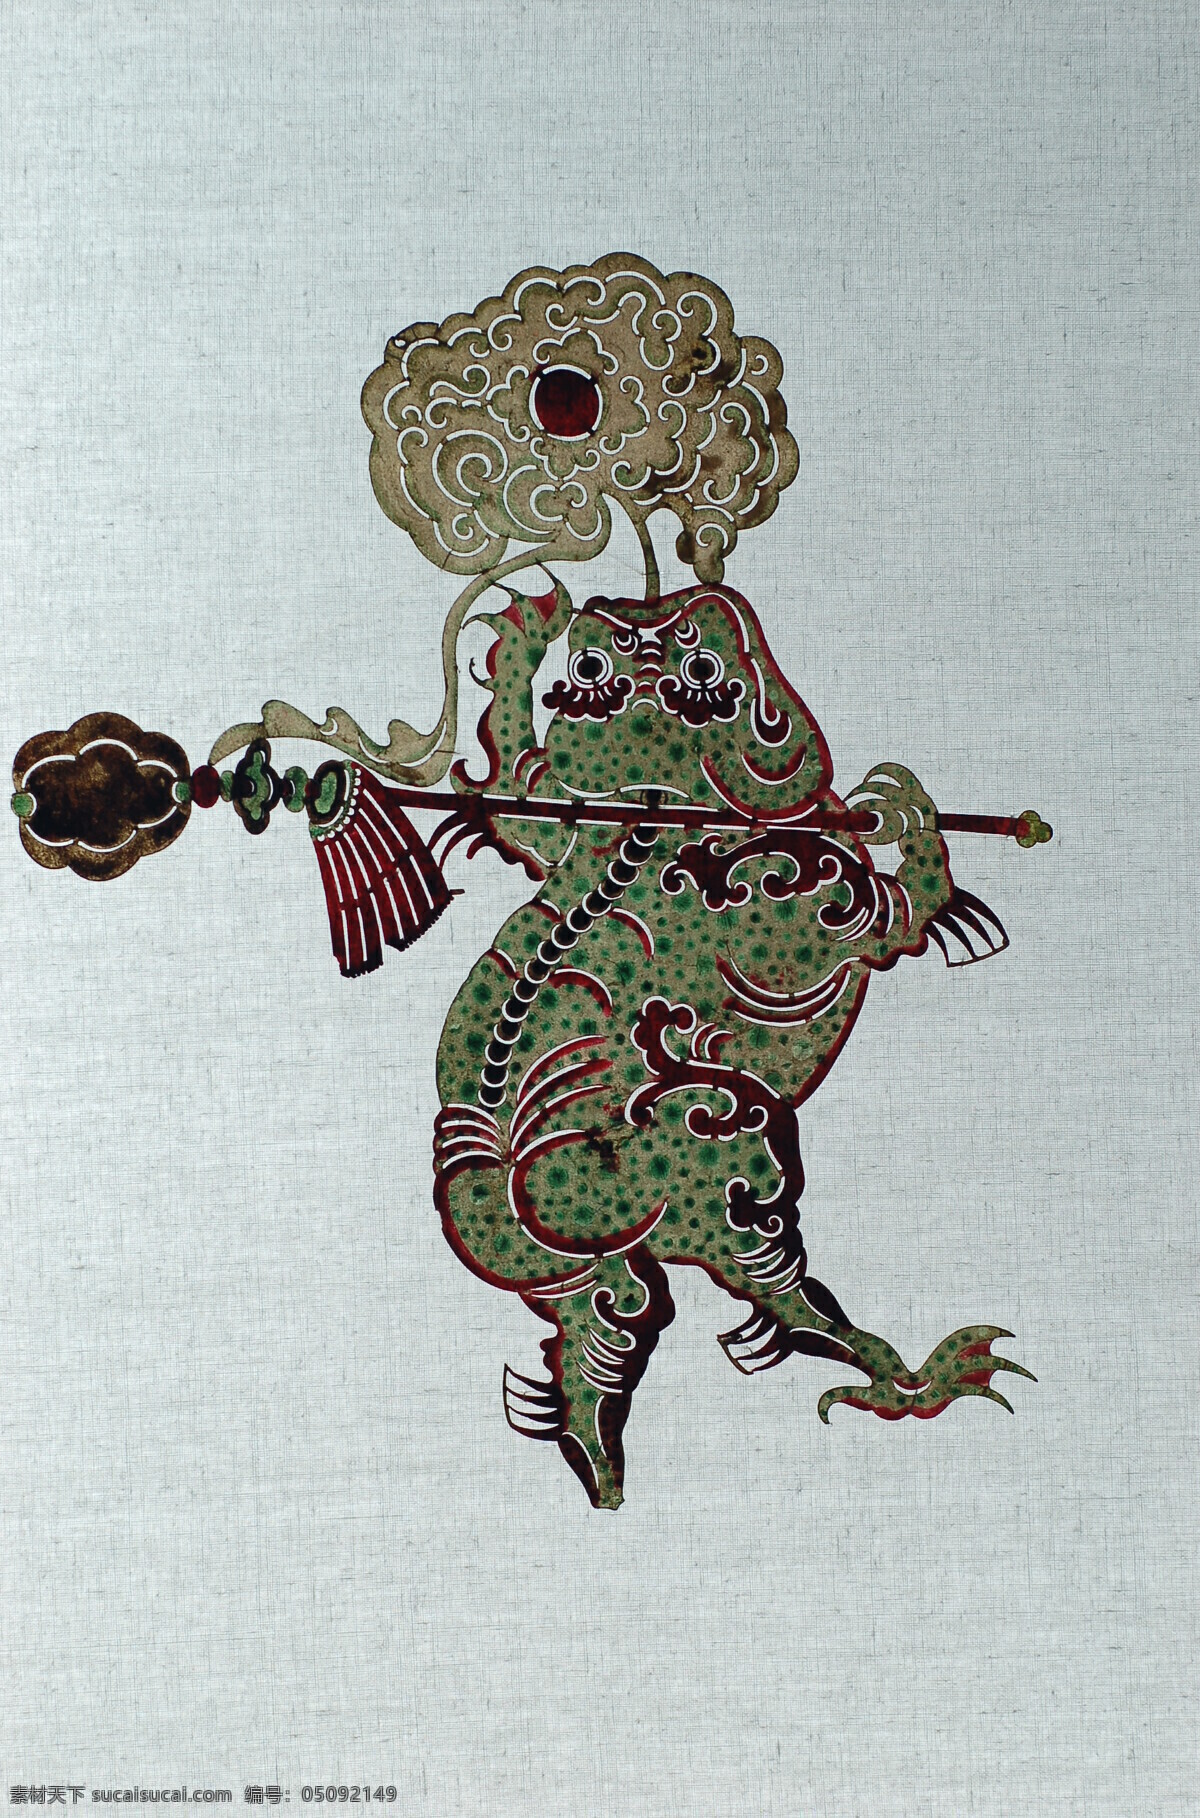 皮影 国画 人物画 传统 民族 驴皮 神话 传说 传统文化 文化艺术